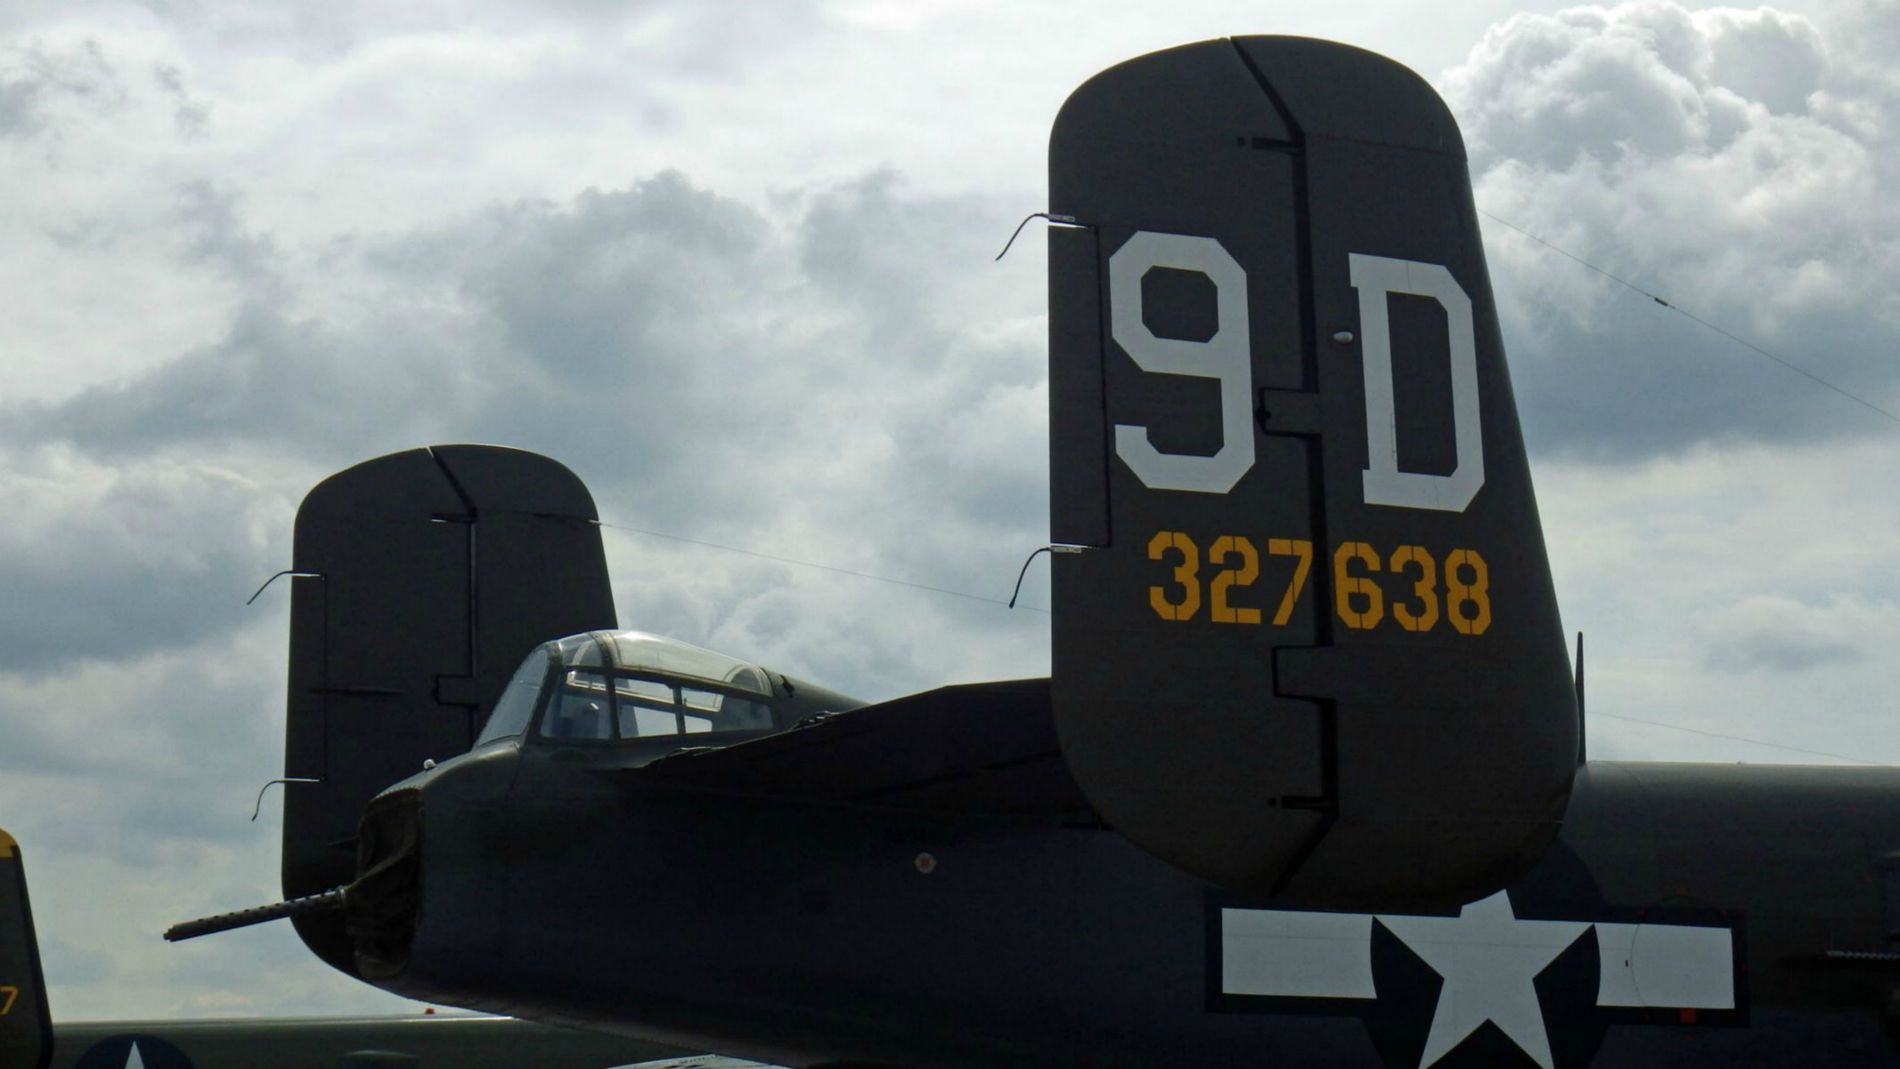 Mitchell B-25 tail.